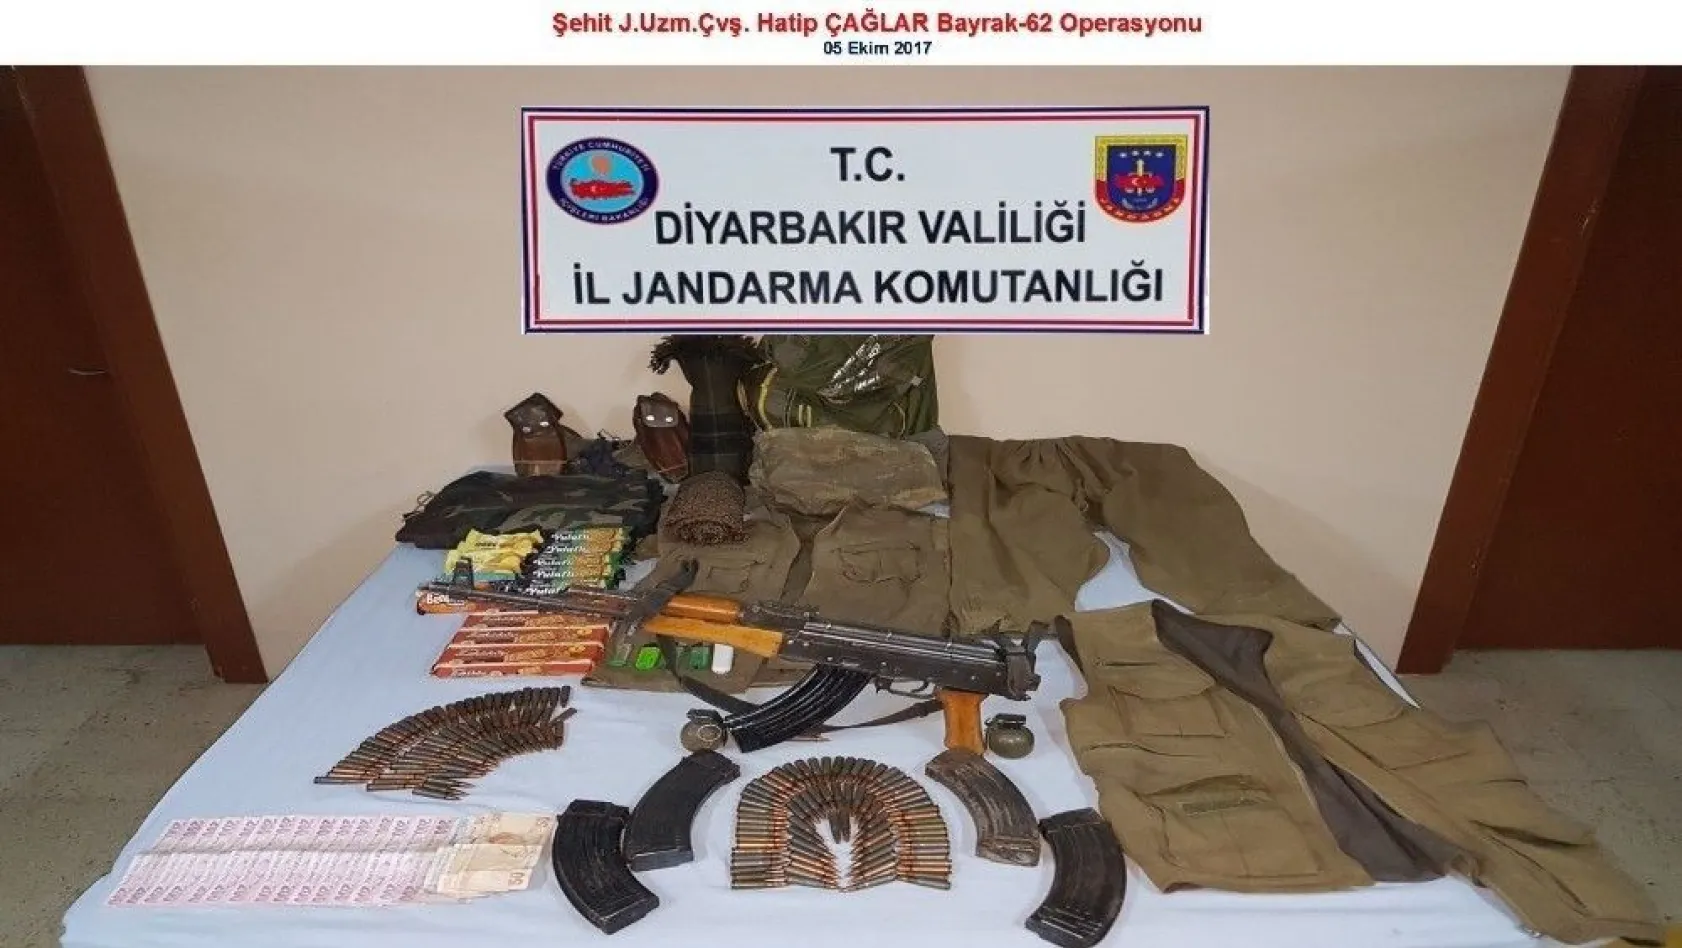 Diyarbakır'da 2 terörist ve 2 işbirlikçi yakalandı, çok sayıda silah ve mühimmat ele geçirildi
